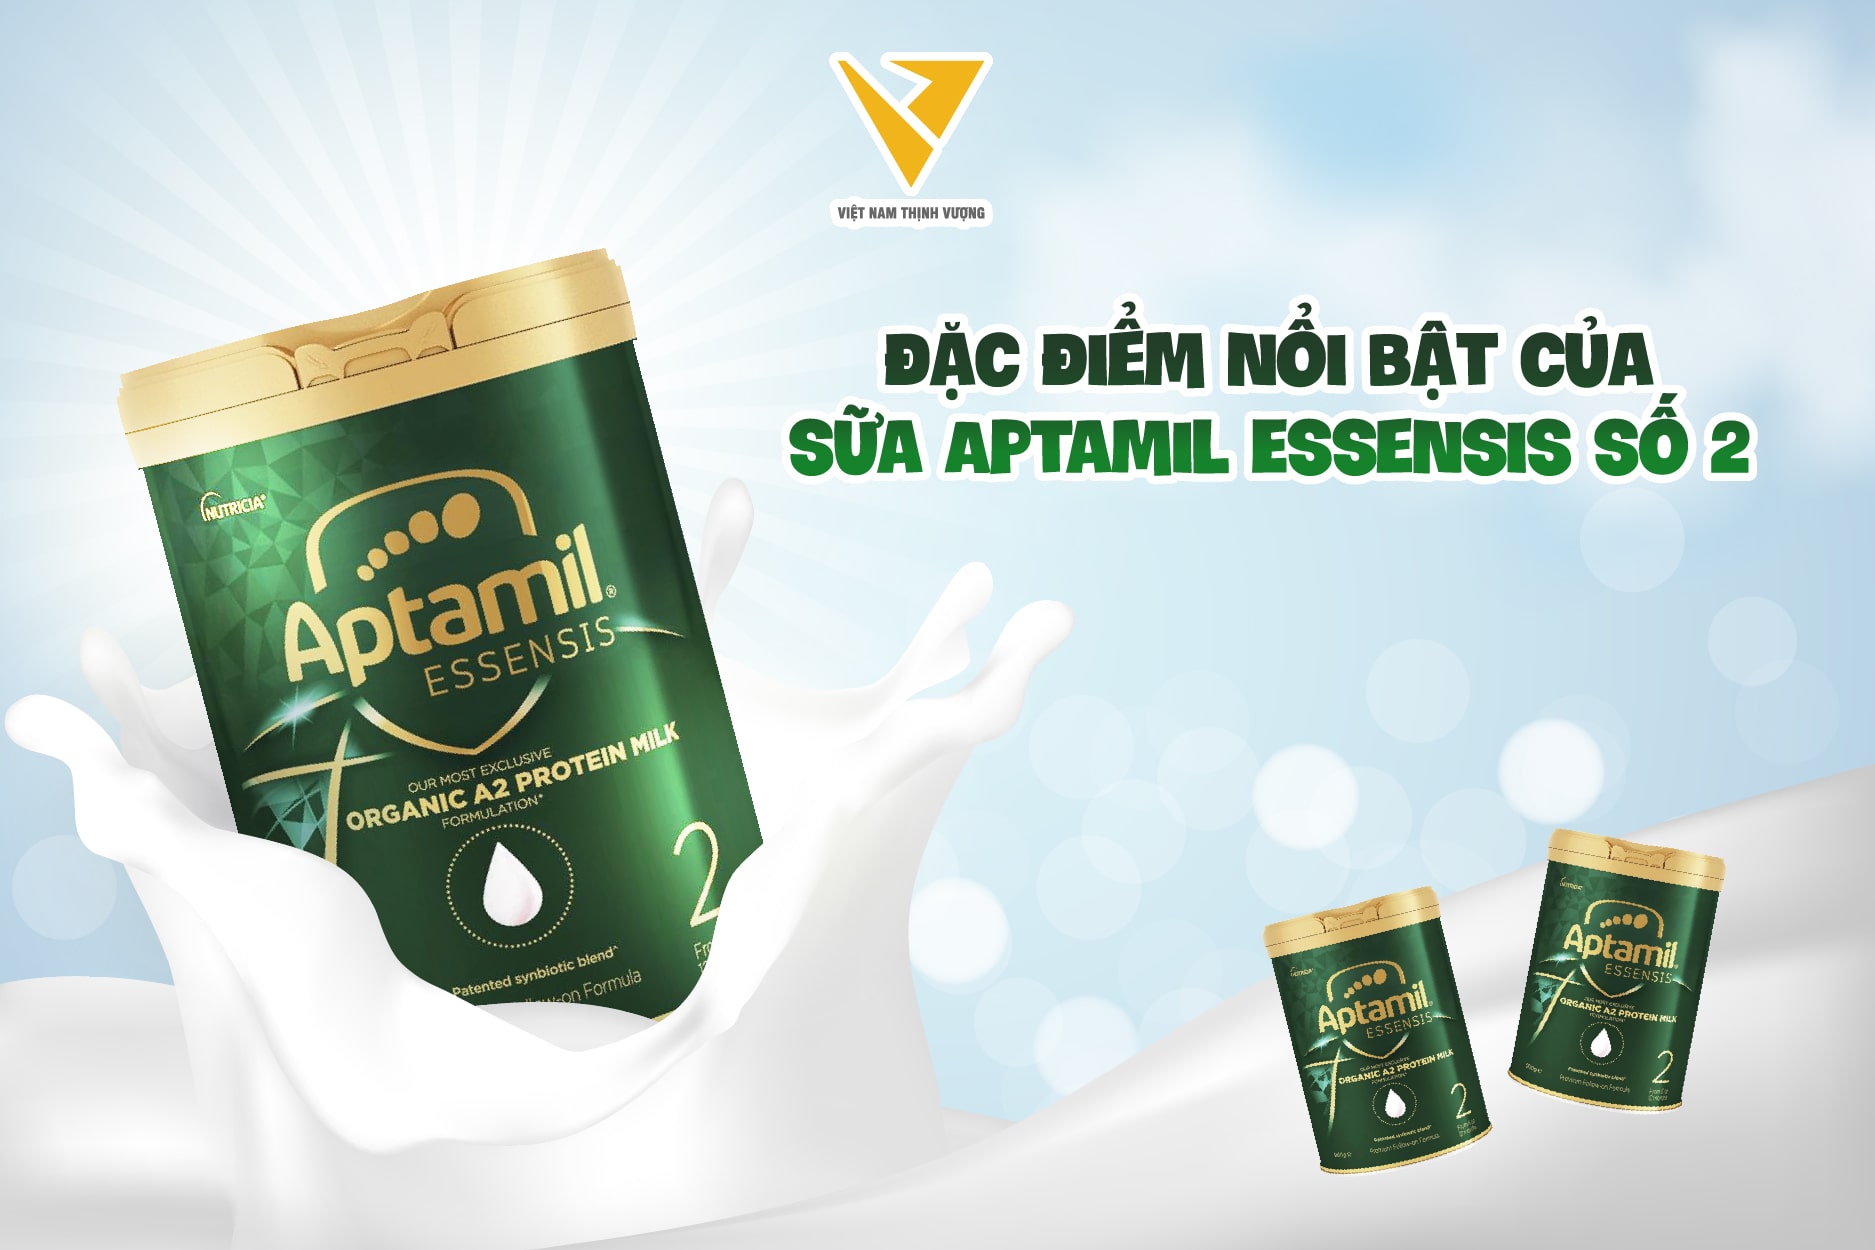 Sữa Aptamil Essensis số 2 nguồn sữa đạm A2 được lựa chọn và chế biến bởi công nghệ hiện đại cam kết là đạm sạch 100%